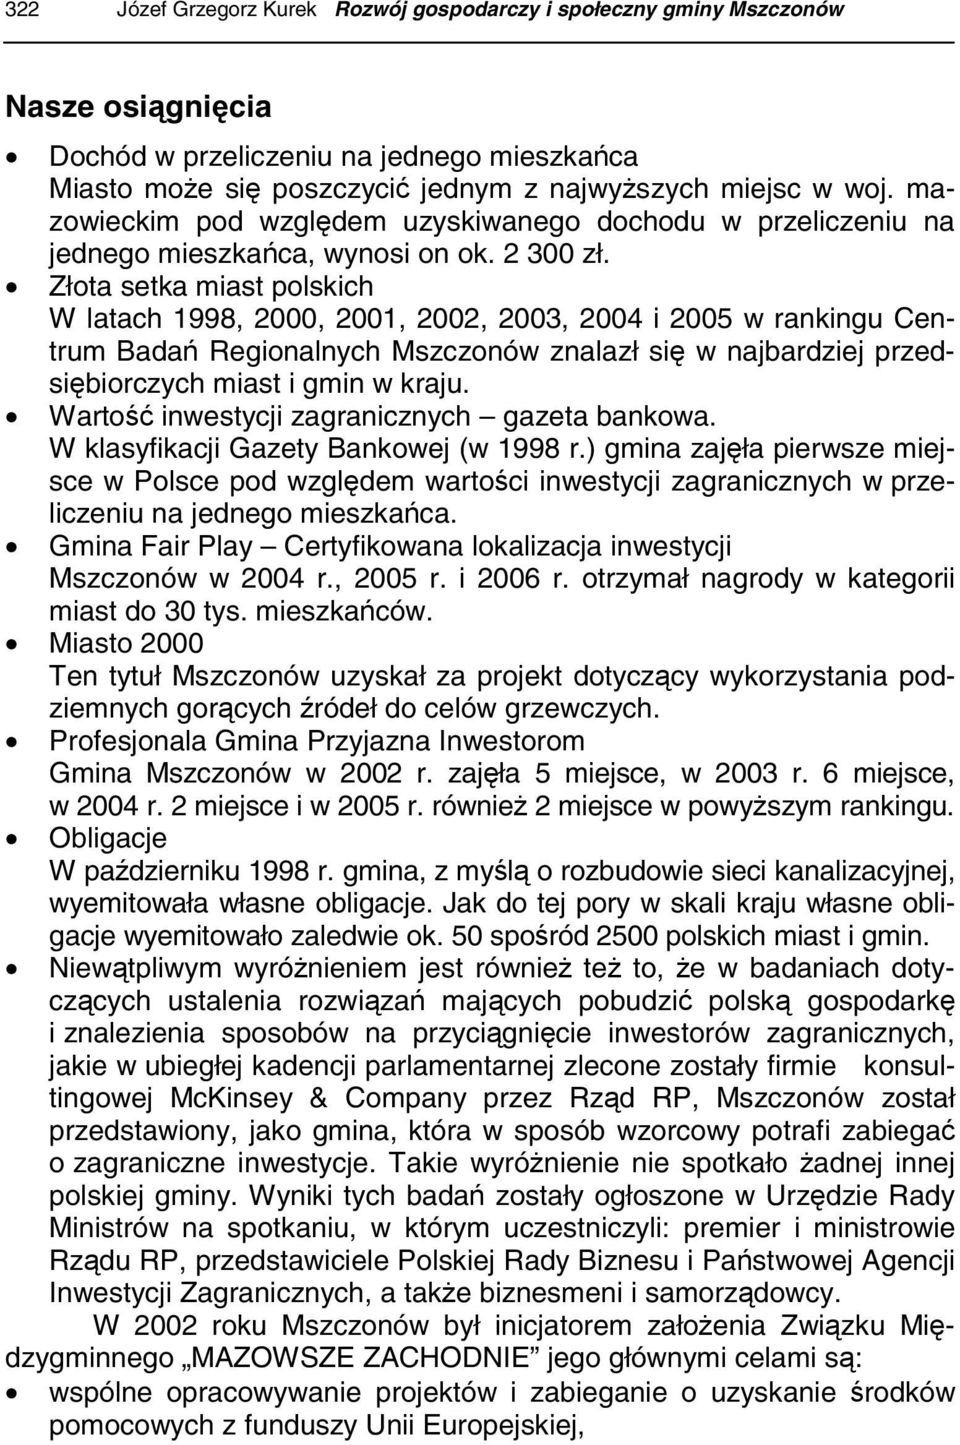 Złota setka miast polskich W latach 1998, 2000, 2001, 2002, 2003, 2004 i 2005 w rankingu Centrum Badań Regionalnych Mszczonów znalazł się w najbardziej przedsiębiorczych miast i gmin w kraju.